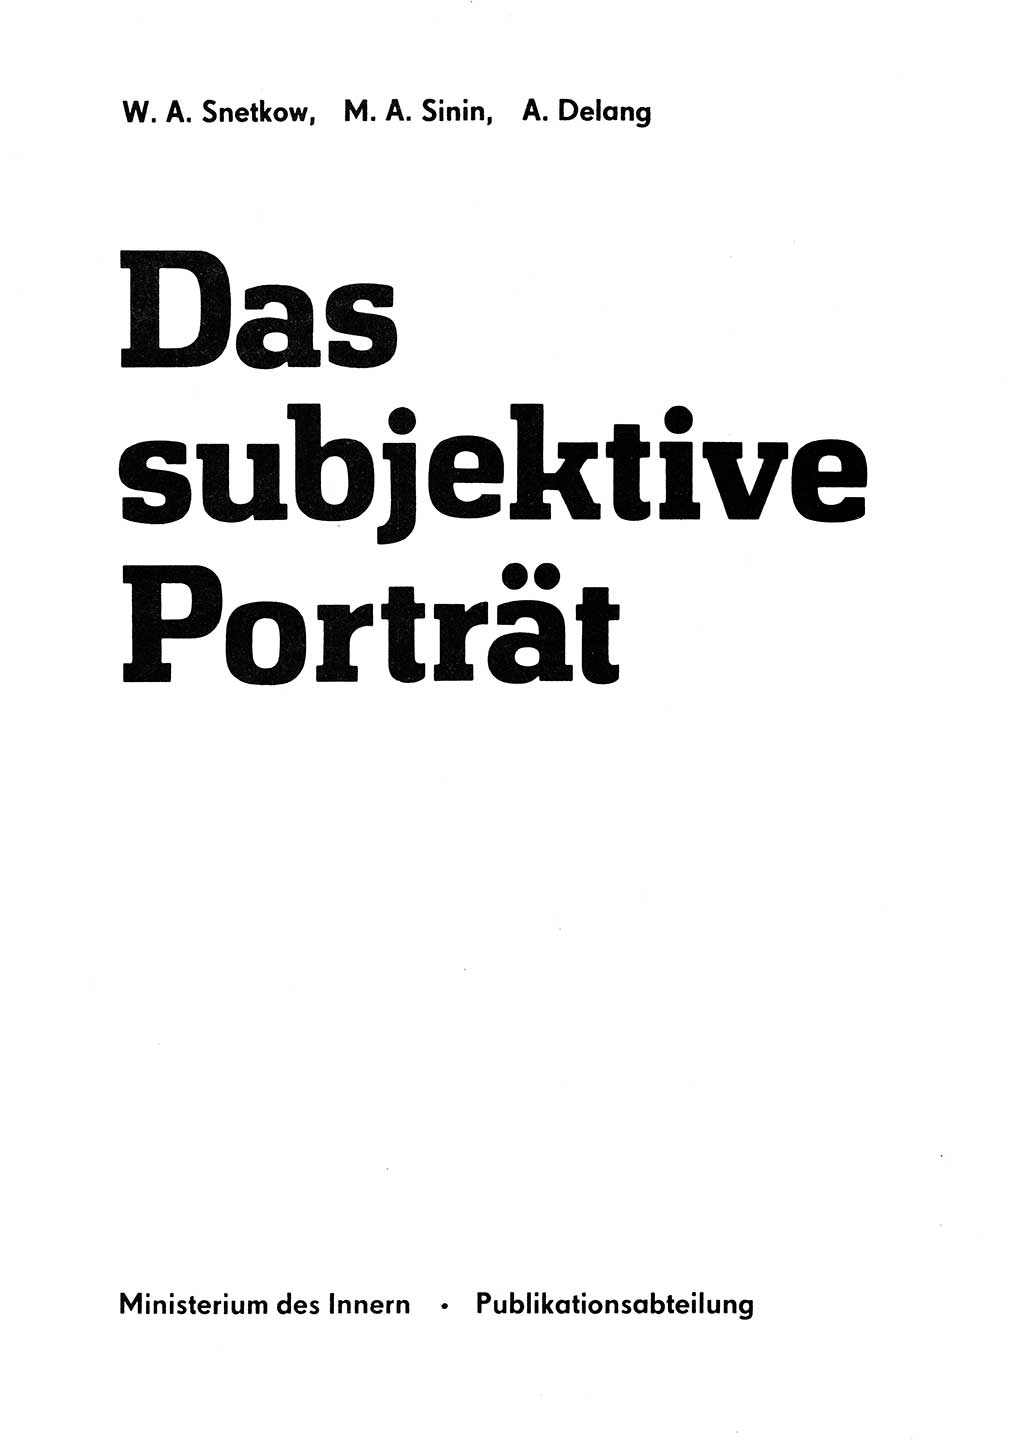 Das subjektive Porträt [Deutsche Demokratische Republik (DDR)] 1981, Seite 3 (Subj. Port. DDR 1981, S. 3)